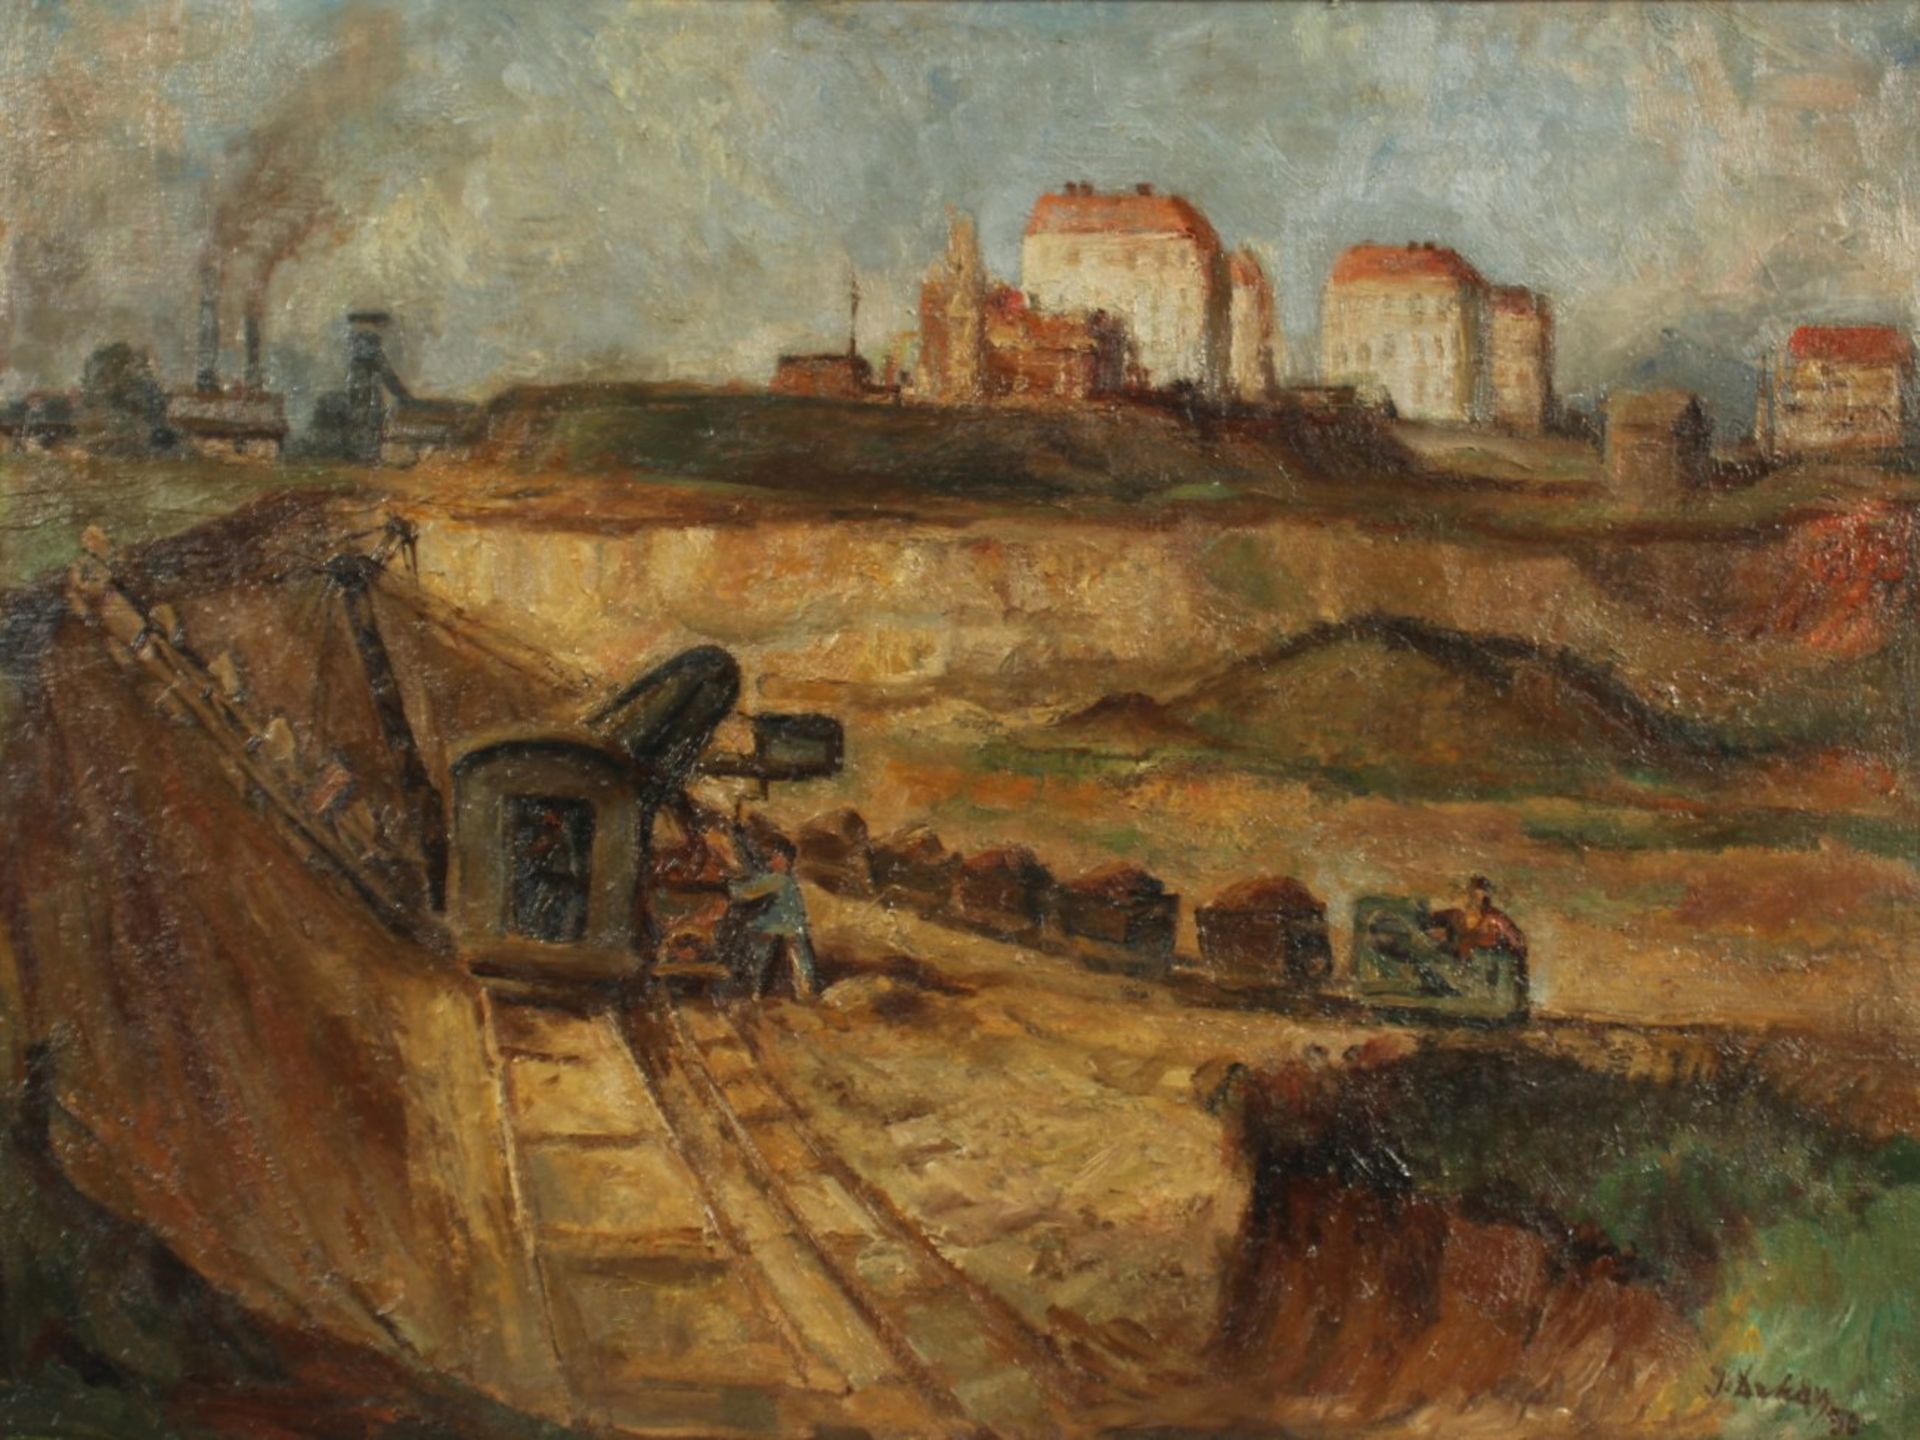 ARKAY, I. (Ungarischer Maler um 1930), "Abbau in einer Kiesgrube", Öl/Lwd., 60 x 80, unten rechts - Bild 2 aus 4